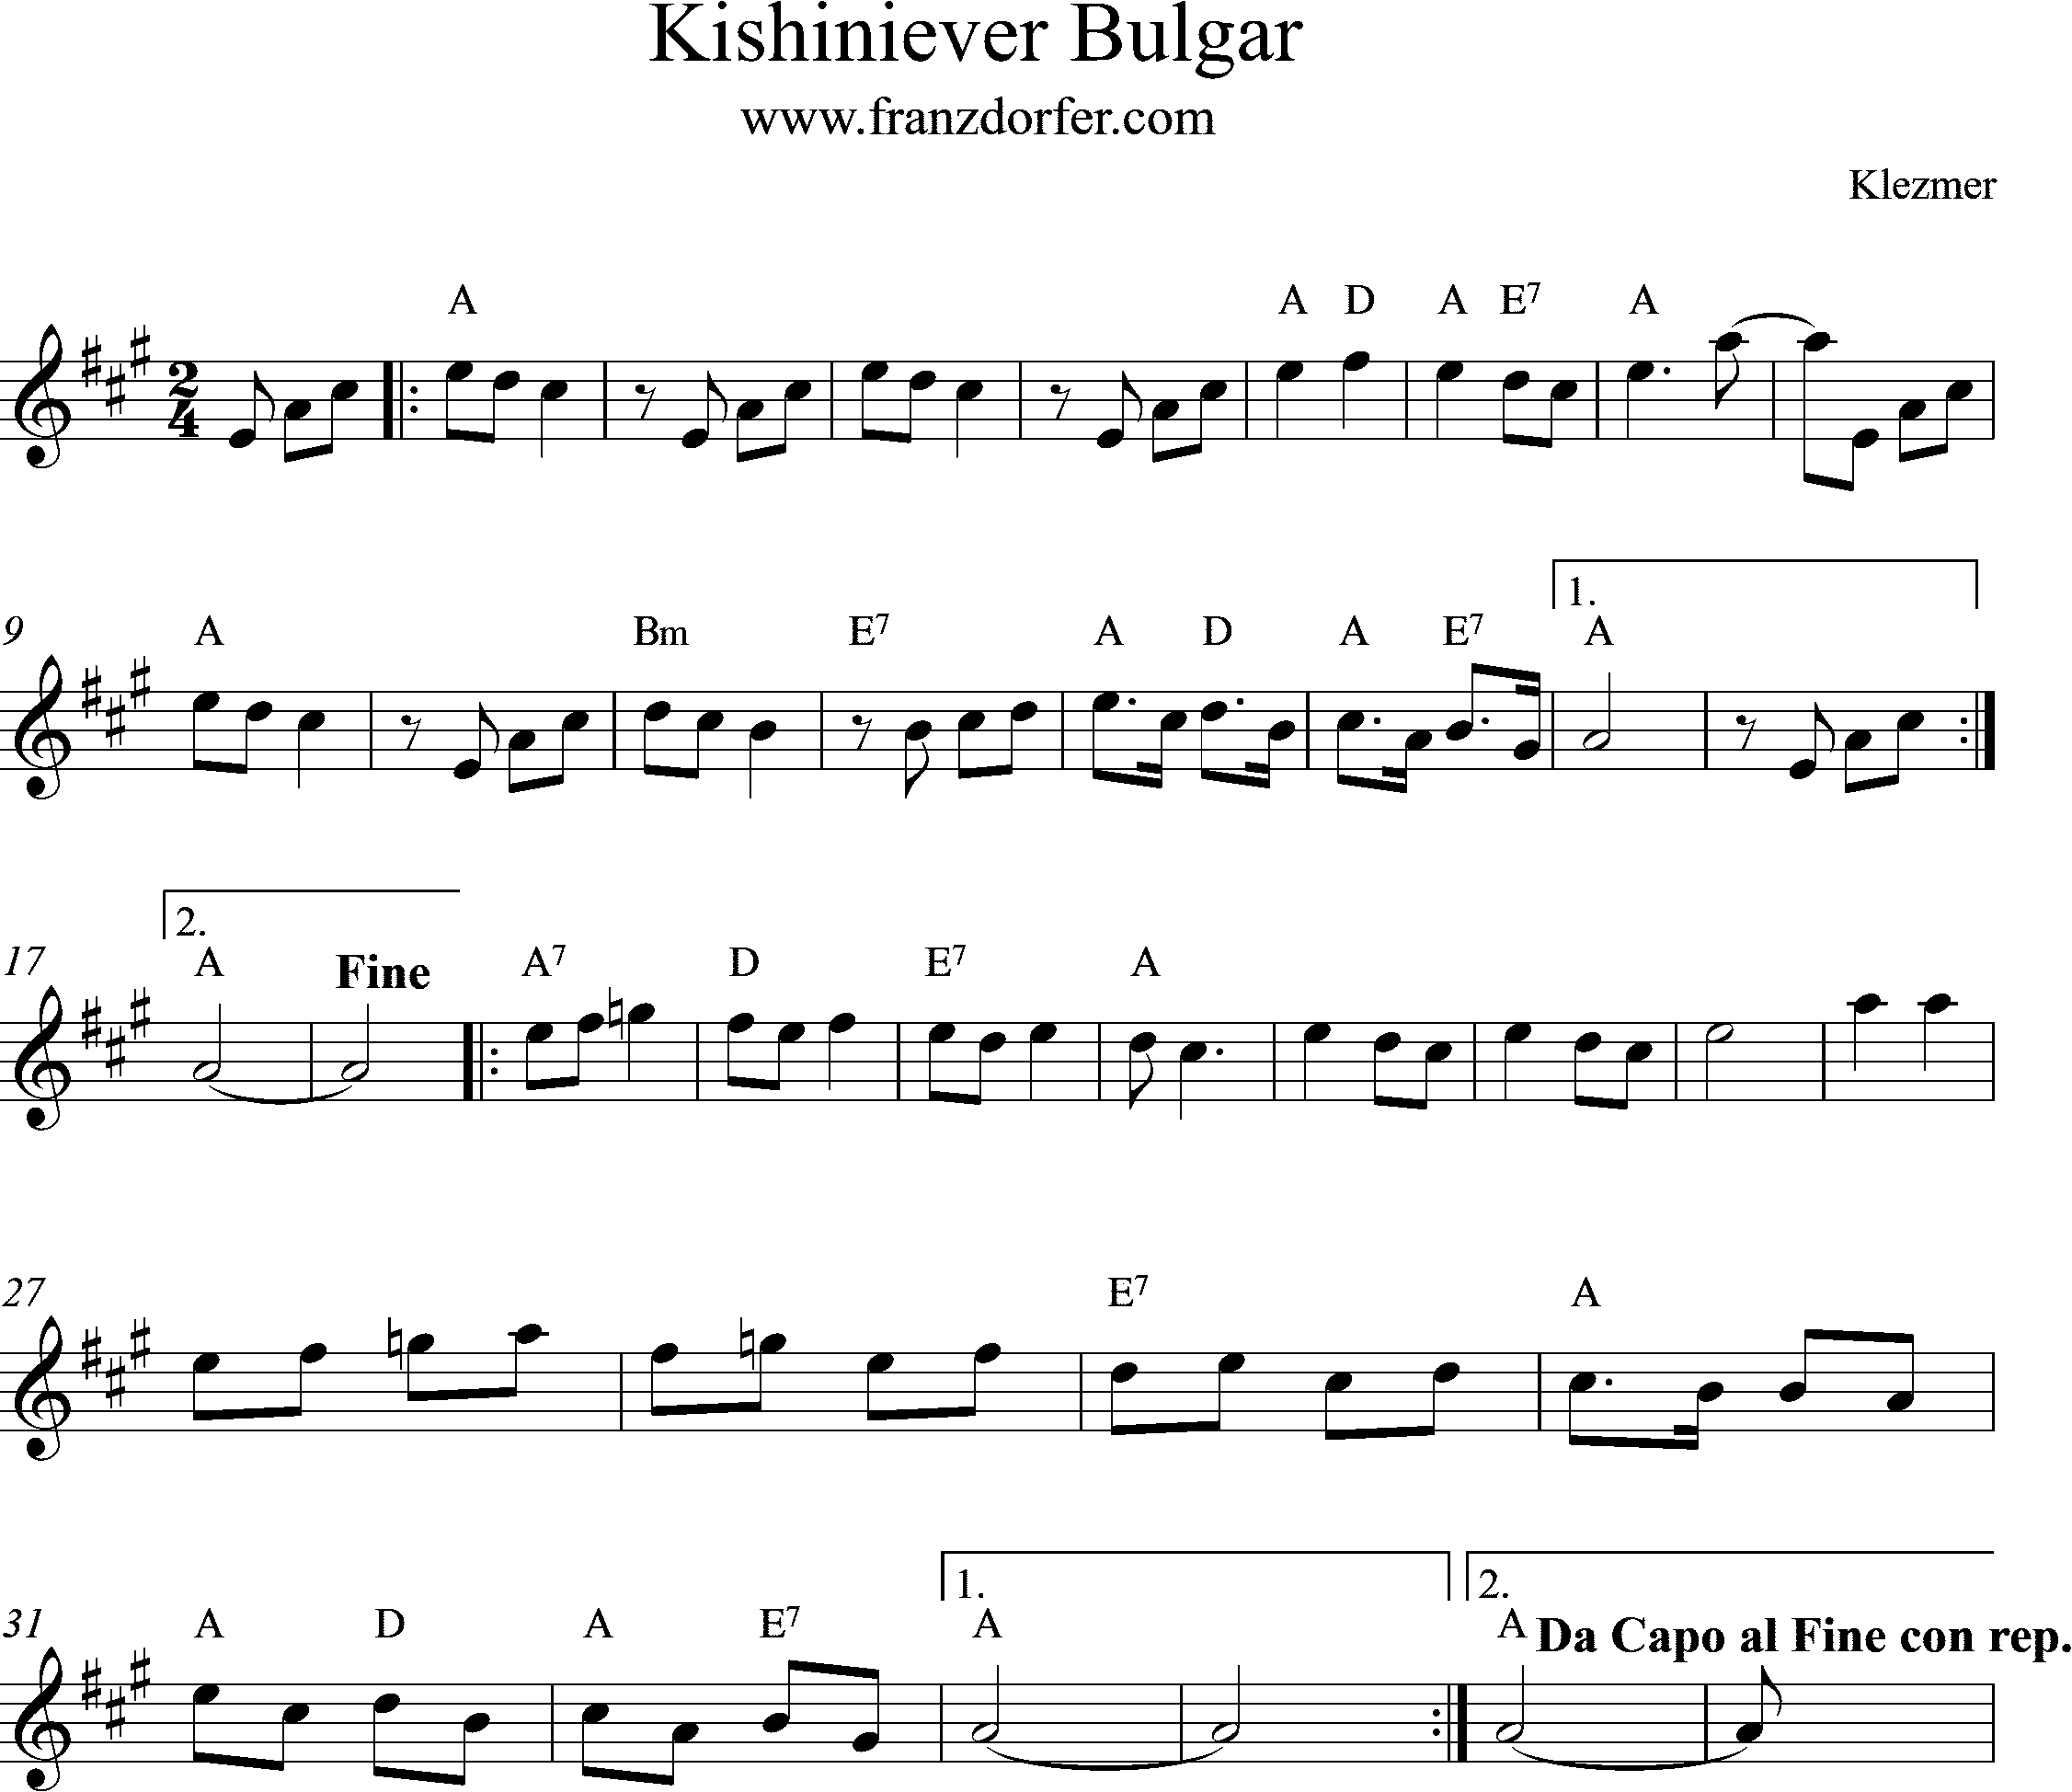 Clarinet sheetmusic Kishiniever Bulgar